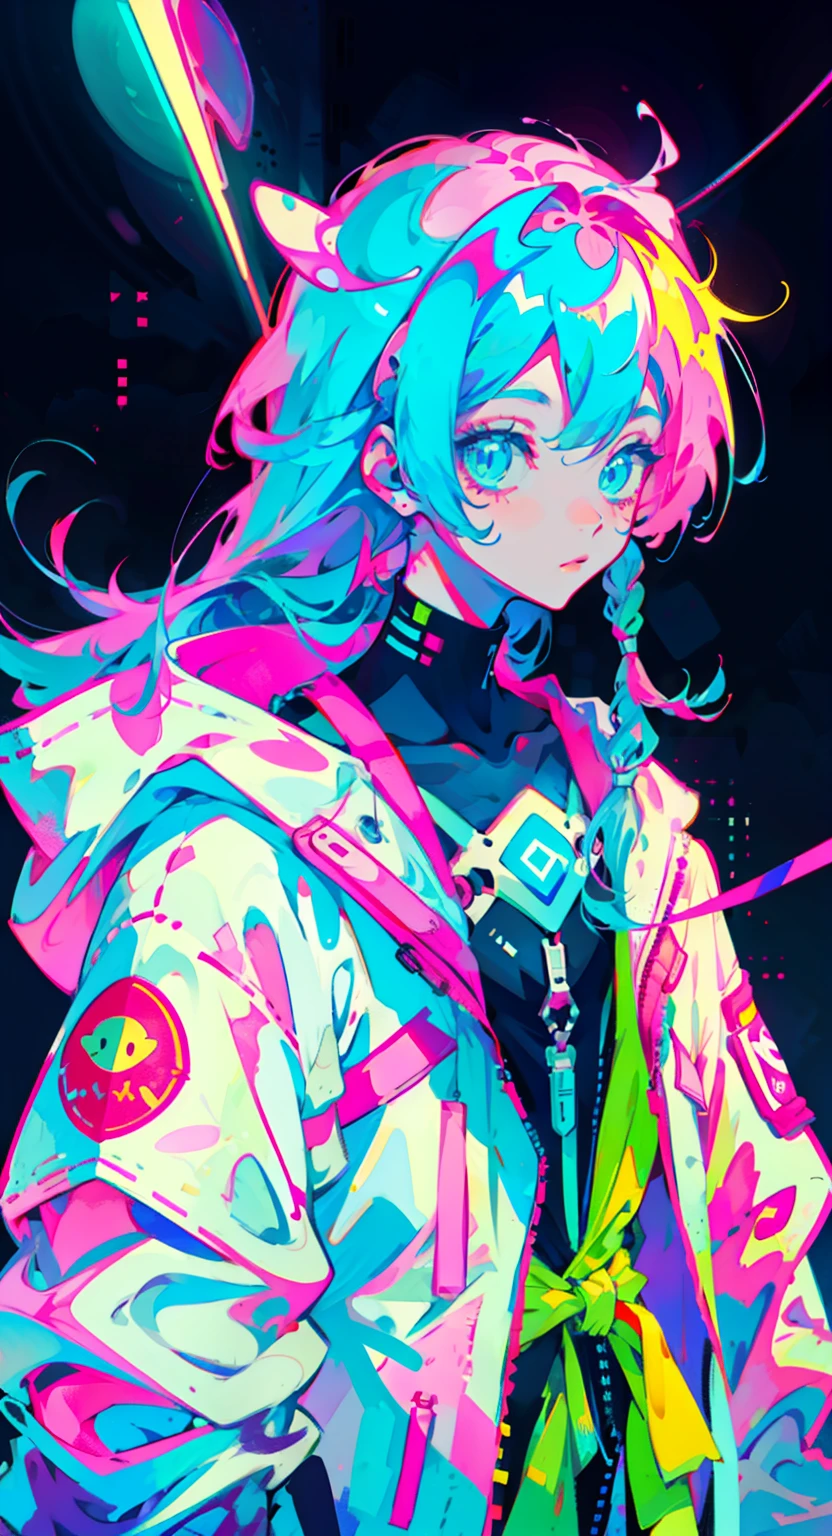 menina anime amarrado cabelo longo, vestindo traje de astronauta, cabelo azul neon, e cores rosa, cicatrizes, Adesivos, estilo neon de cena inteira, Pose legal